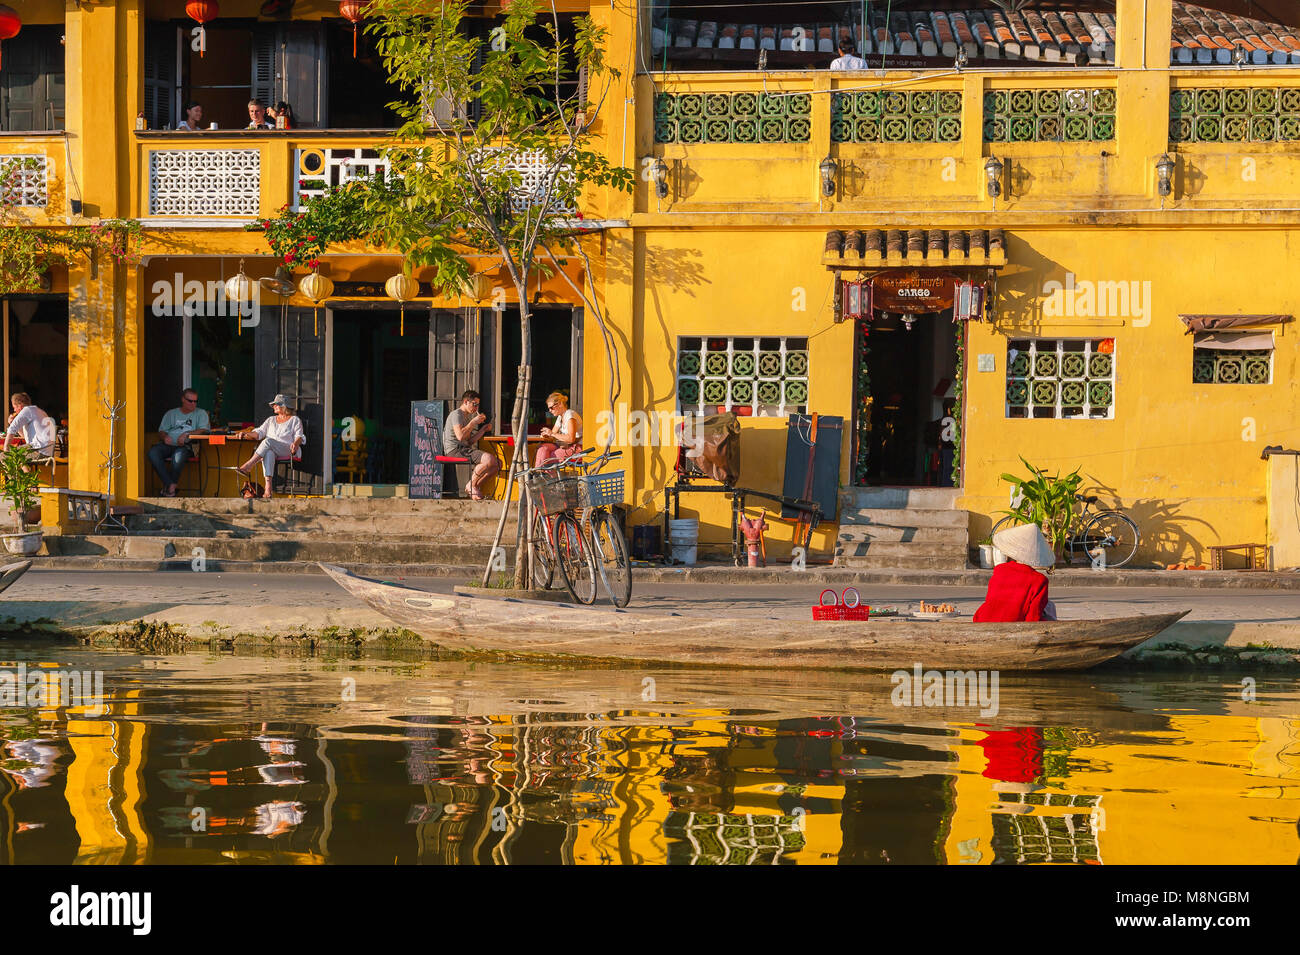 Tourisme du Vietnam, au coucher du soleil le long de la rivière Thu Bon dans la vieille ville de Hoi An, les touristes se détendre dans un café-bar au bord de l'eau, au Vietnam. Banque D'Images